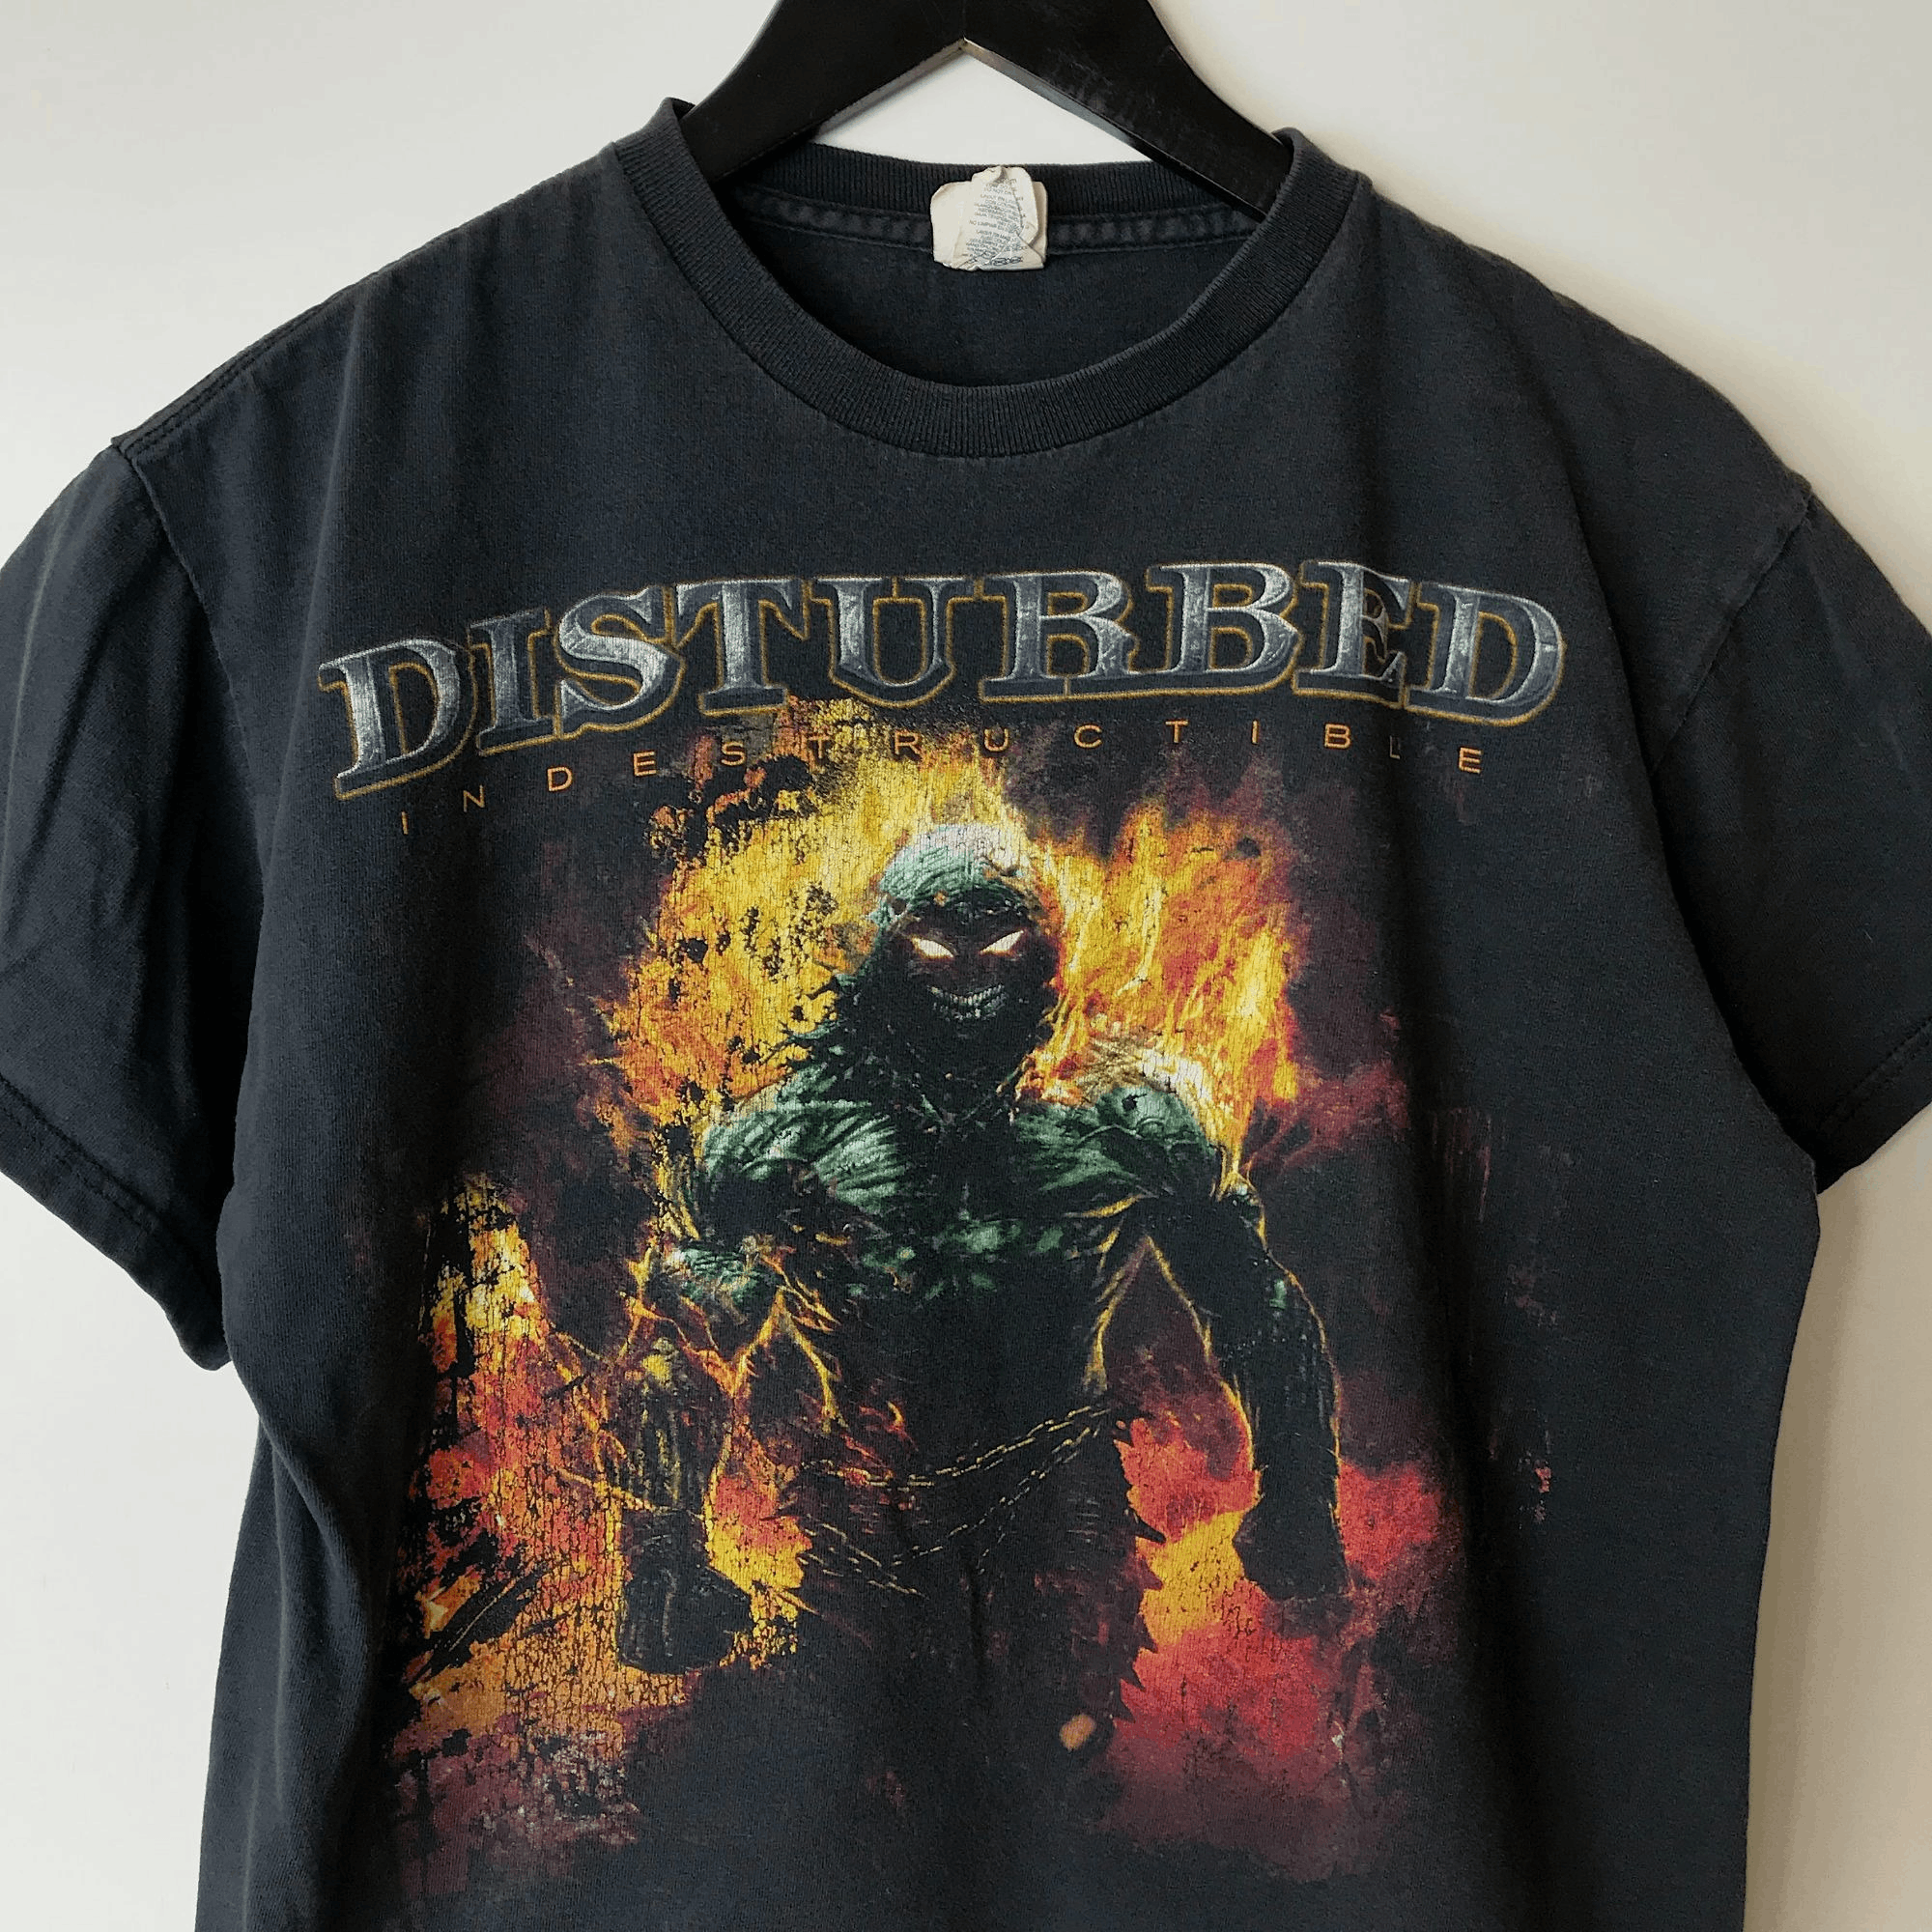 Delta 2009 Vintage Disturbed Indestructible Tour T Shirt 00s Adult Size US S / EU 44-46 / 1 - 4 Thumbnail